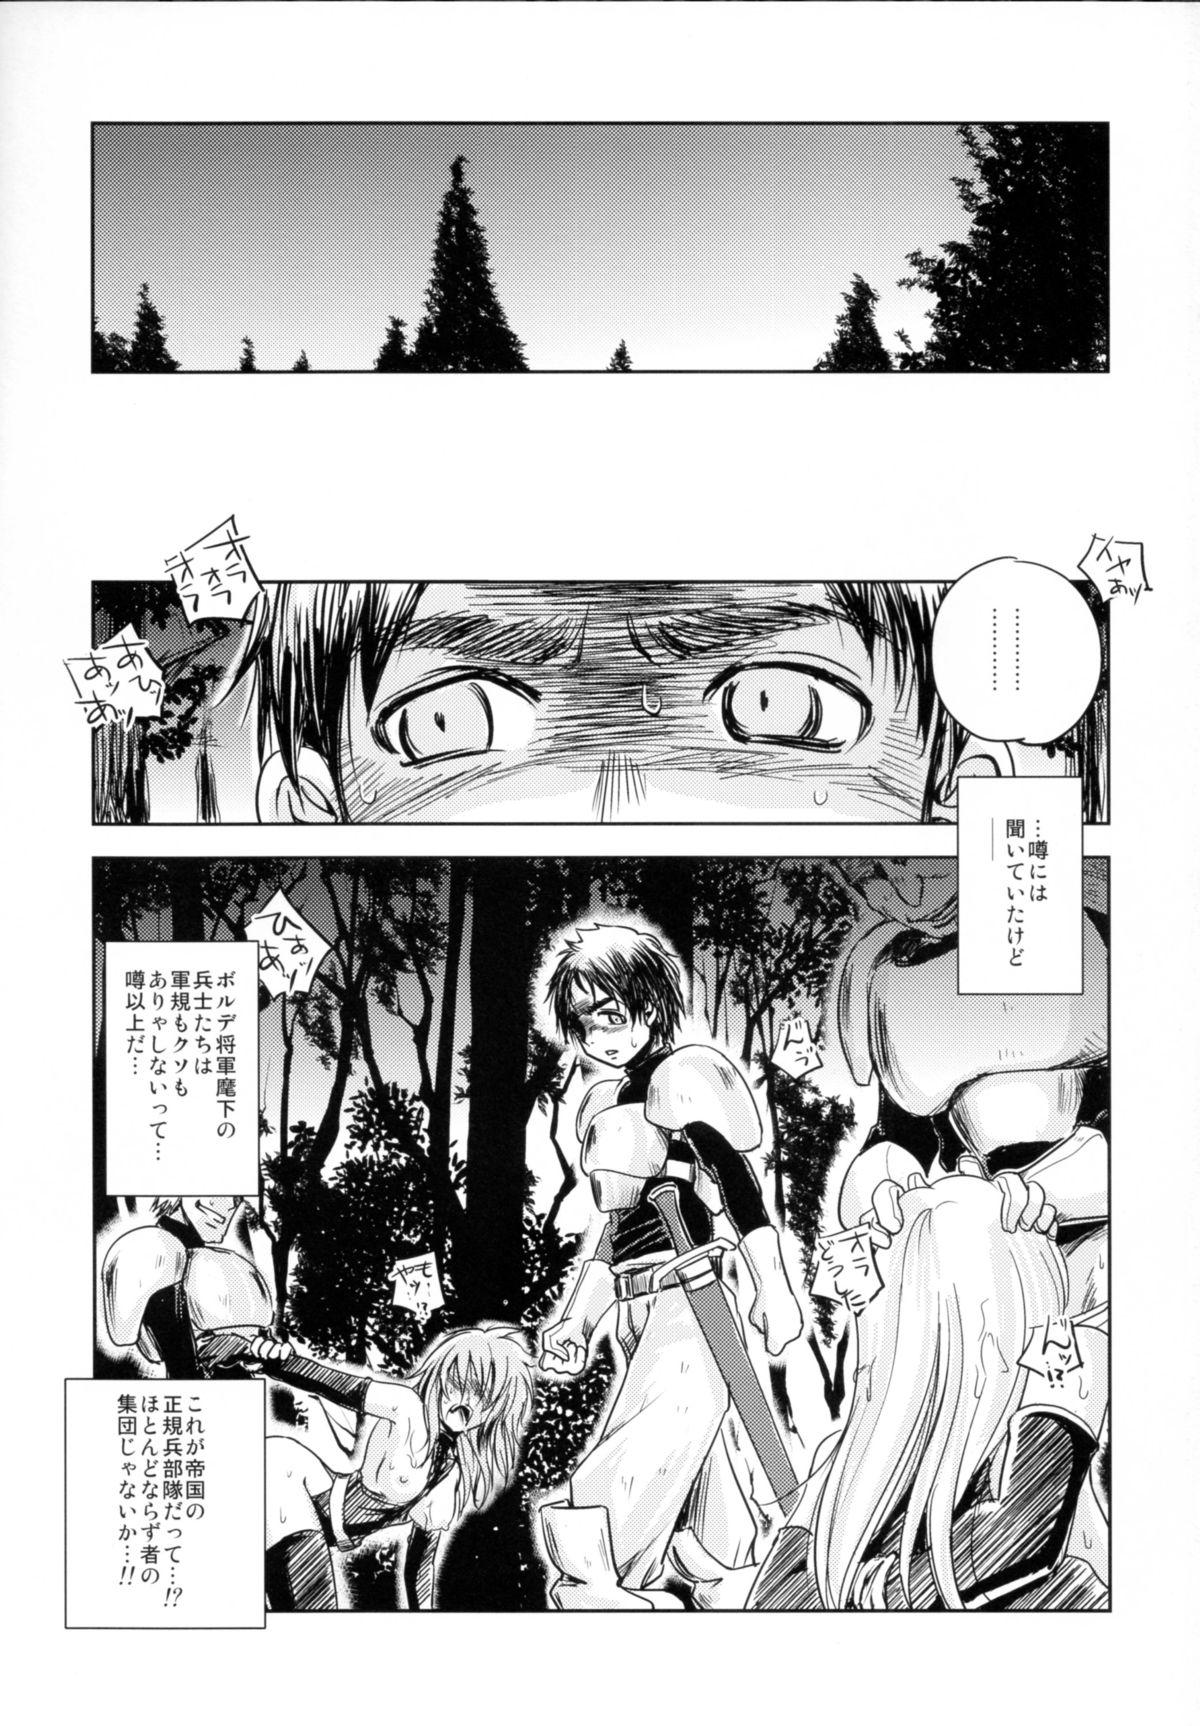 GRASSEN'S WAR ANOTHER STORY Ex #03 Node Shinkou III 2